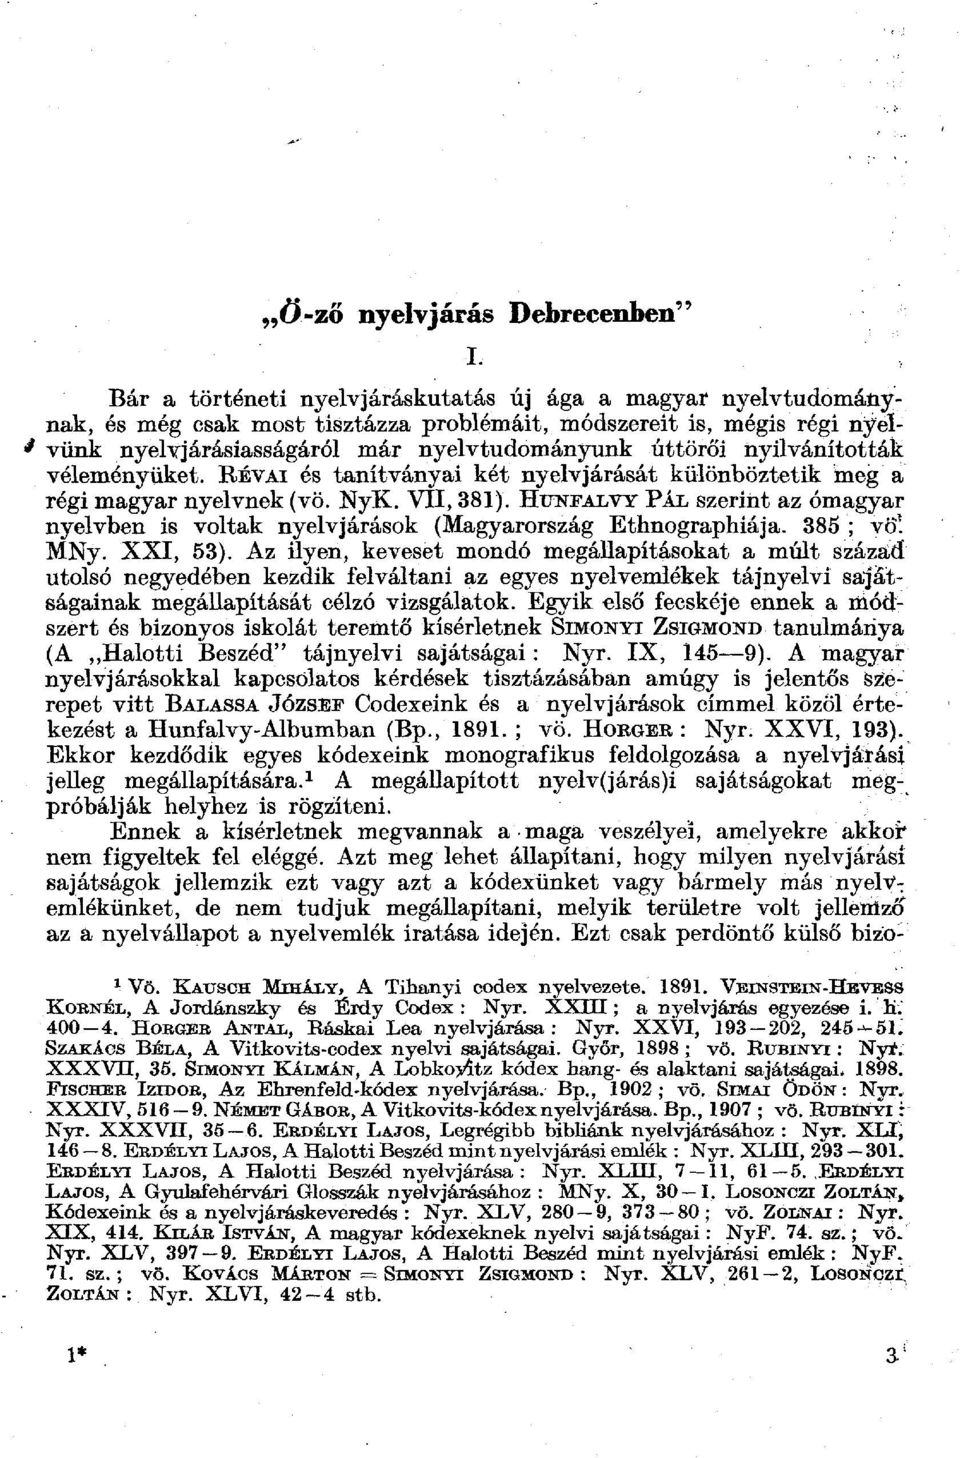 HuNFALVY PÁL szerint az ómagyar nyelvben is voltak nyelvjárások (Magyarország Ethnographiája. 385 ; völ MNy. XXI, 53).